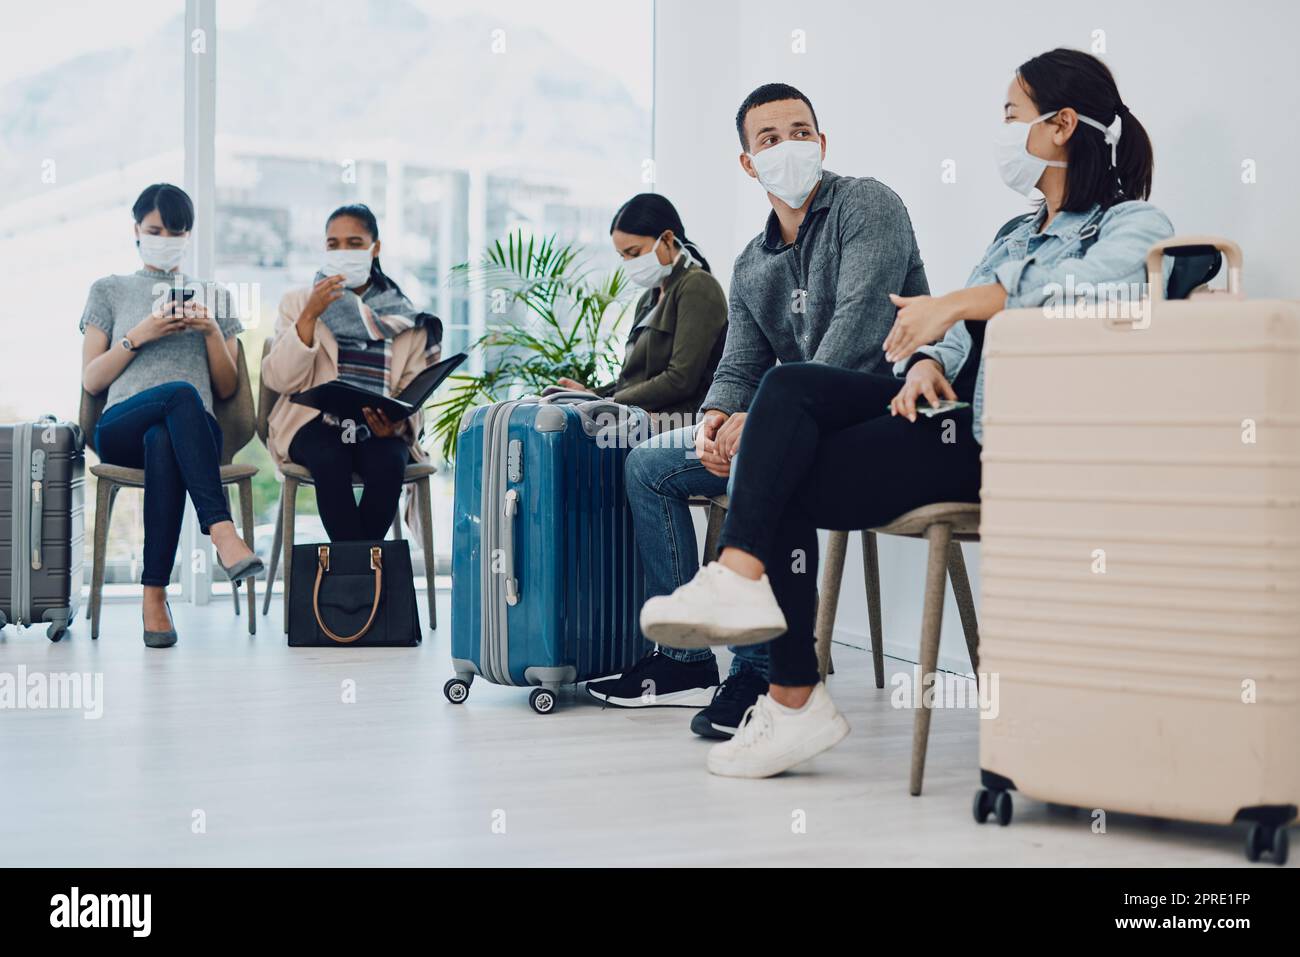 Gruppe von Personen, die während des Covid in der Schlange in einer Flughafenlounge mit Schutzmasken unterwegs sind. Touristen, die während der Coronavirus-Pandemie in einer Schlange in einer öffentlichen Reiseeinrichtung sitzen Stockfoto